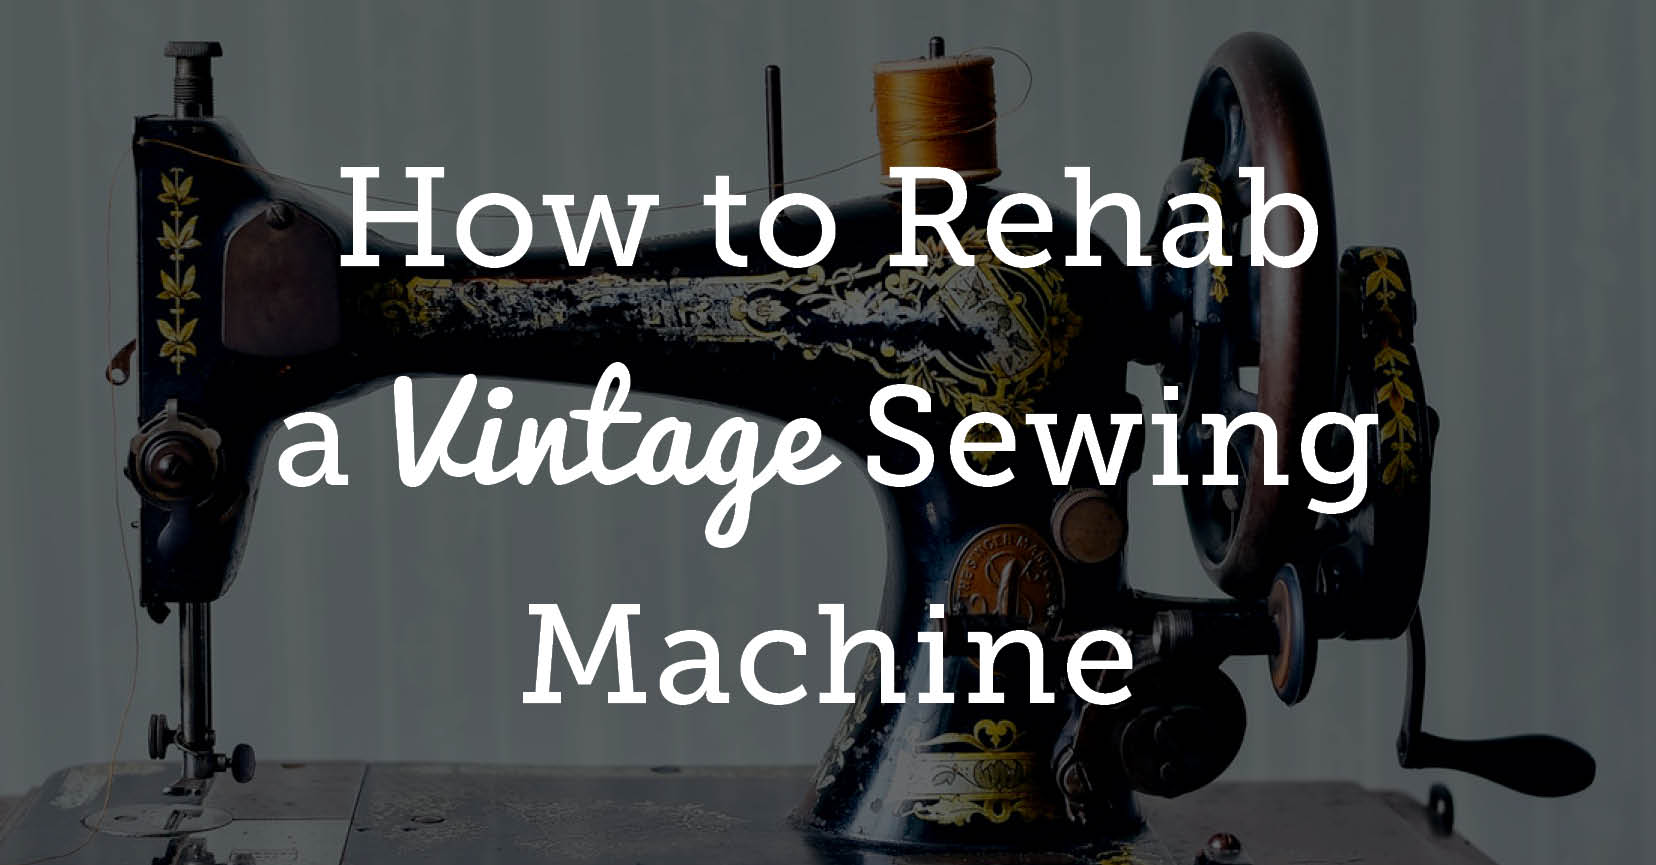 Sewing Machine Guide: Basic Upkeep, Troubleshooting, NSC